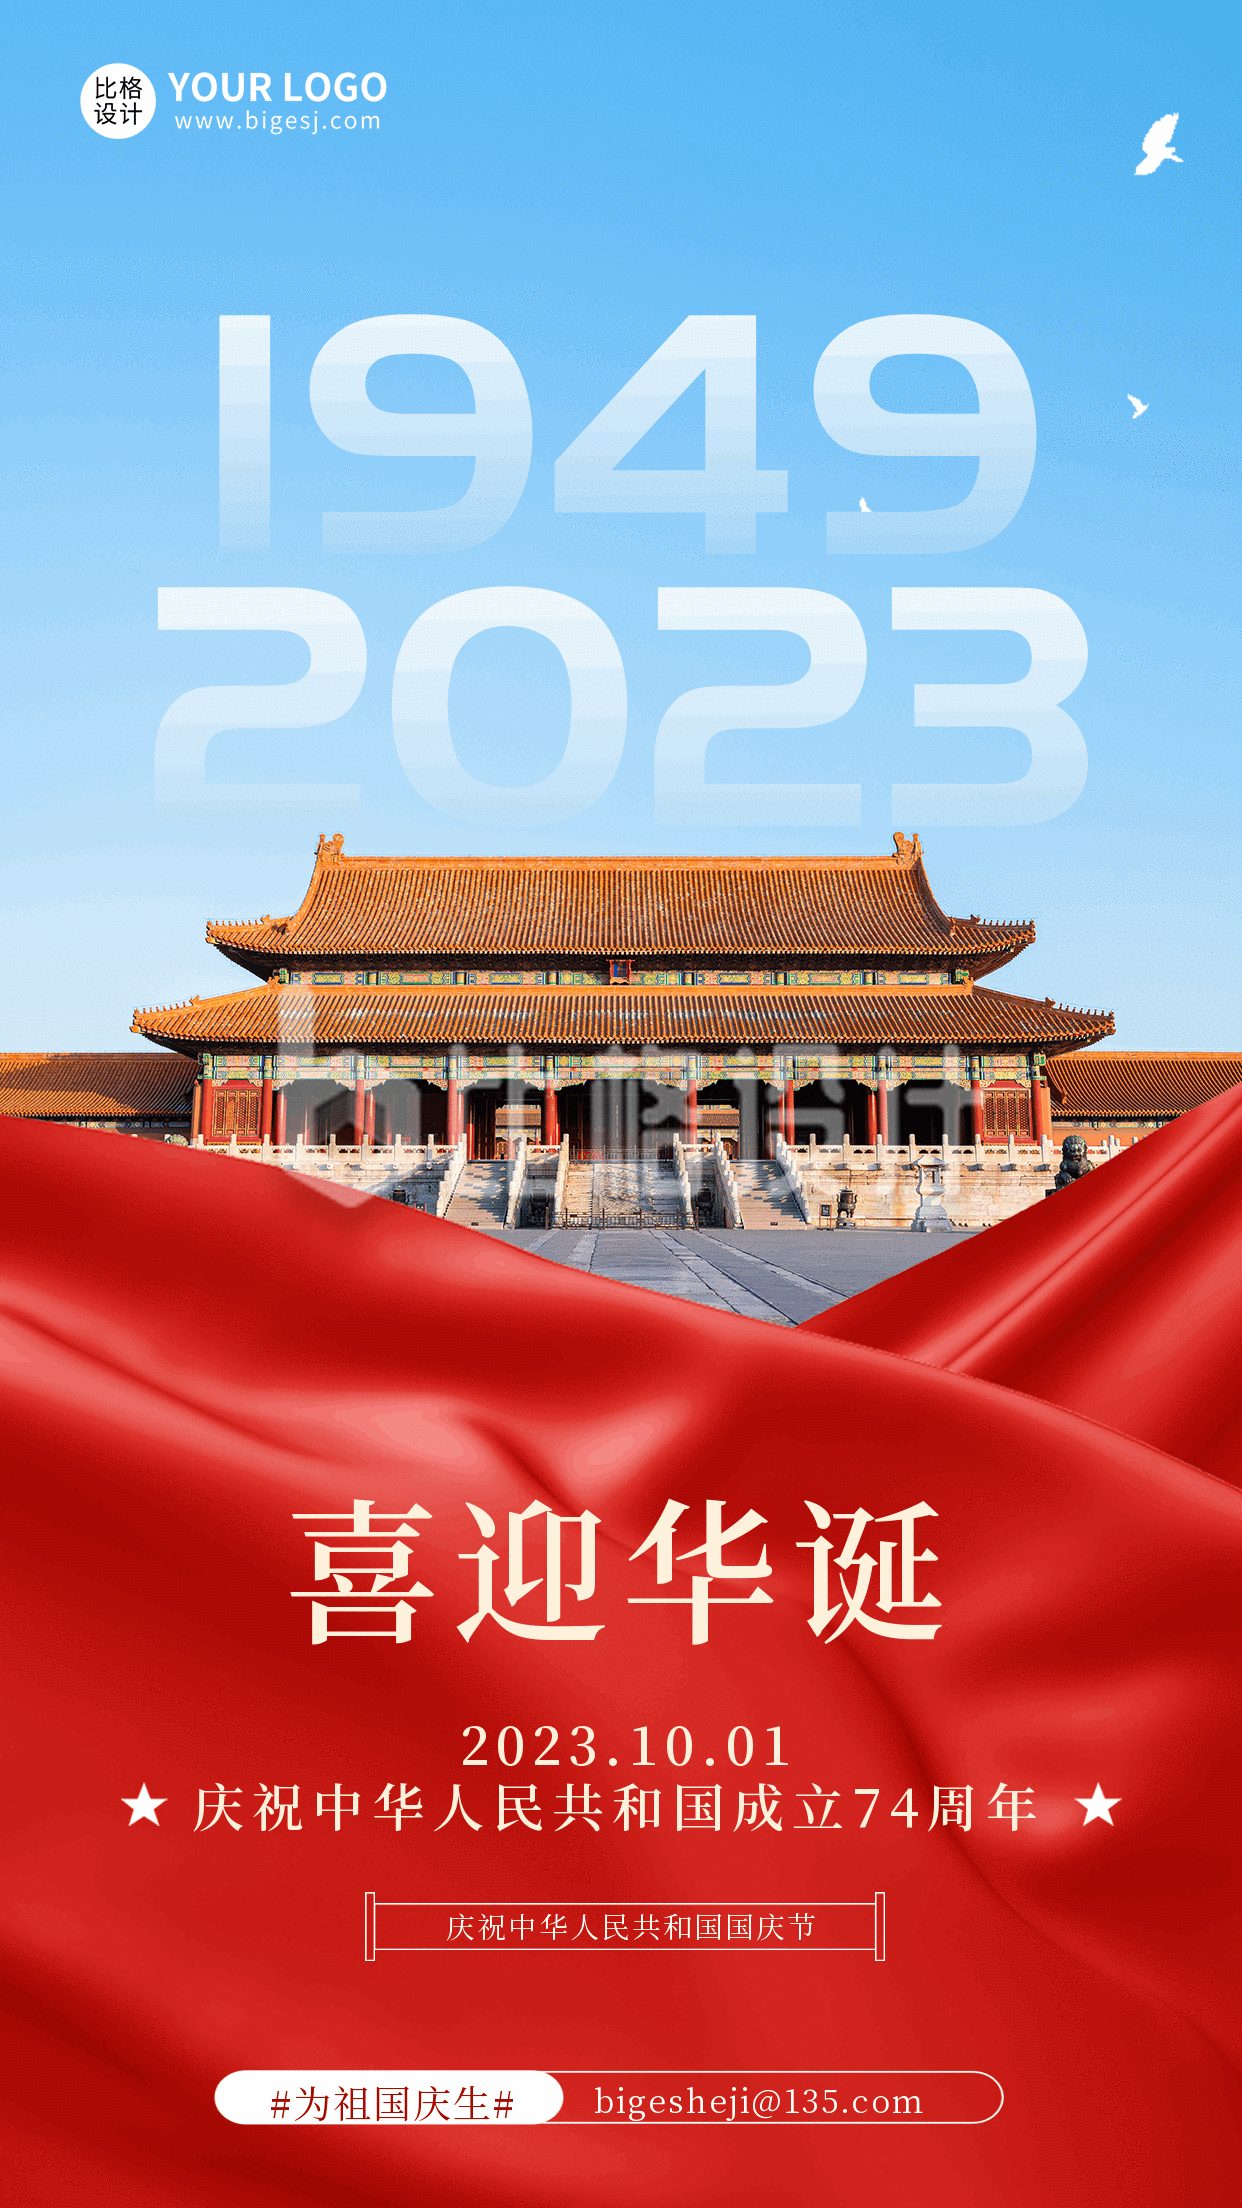 简约大气商务祝福国庆节74周年动态手机海报